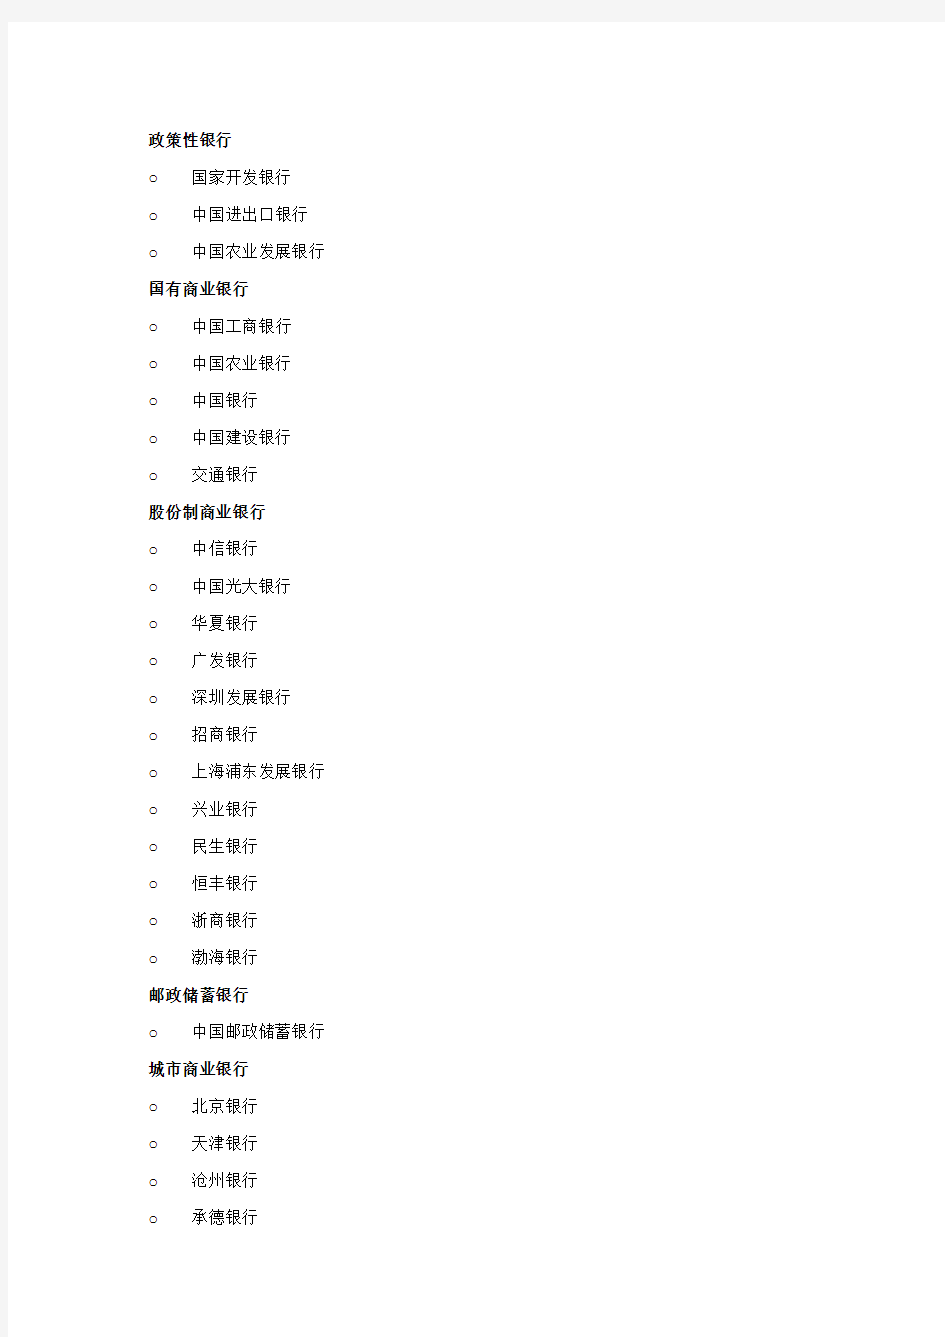 2012最全中国境内中资及外资银行名单和网址